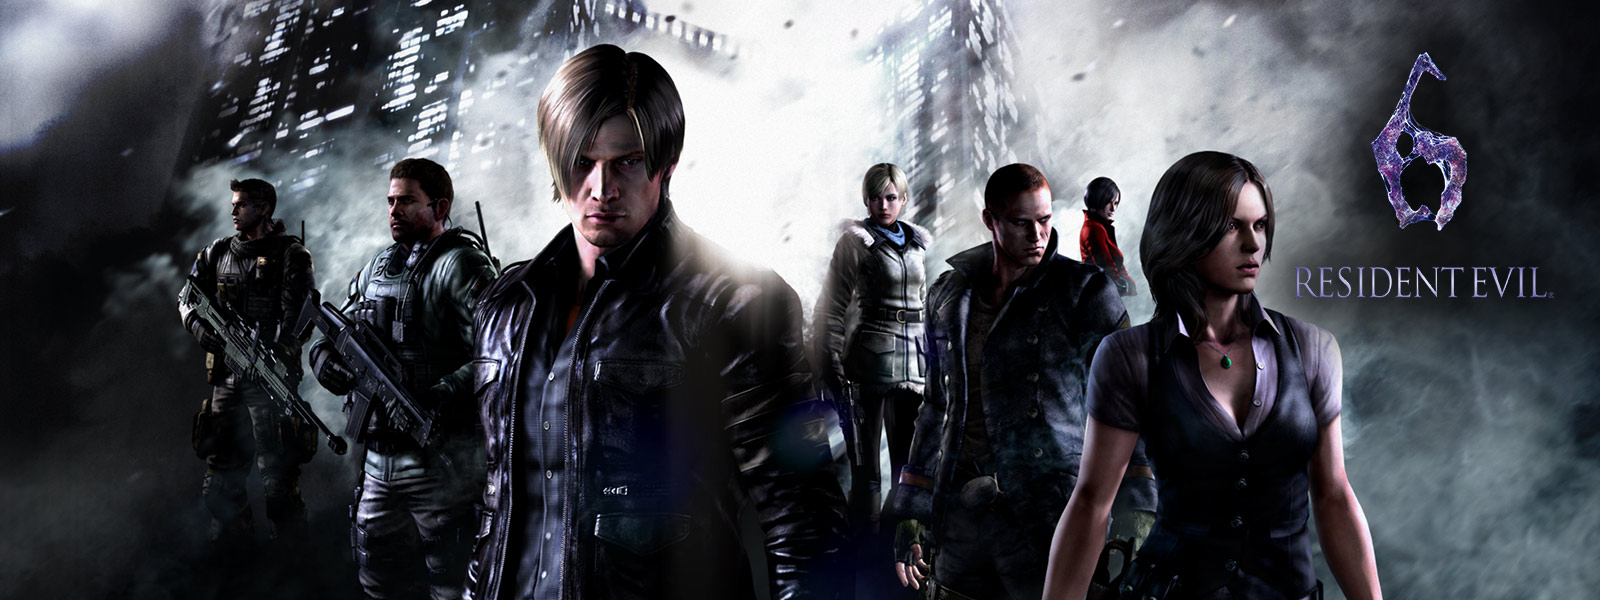 Resident Evil 6, tous les personnages de resident evil se tenant devant des gratte-ciels sinistres